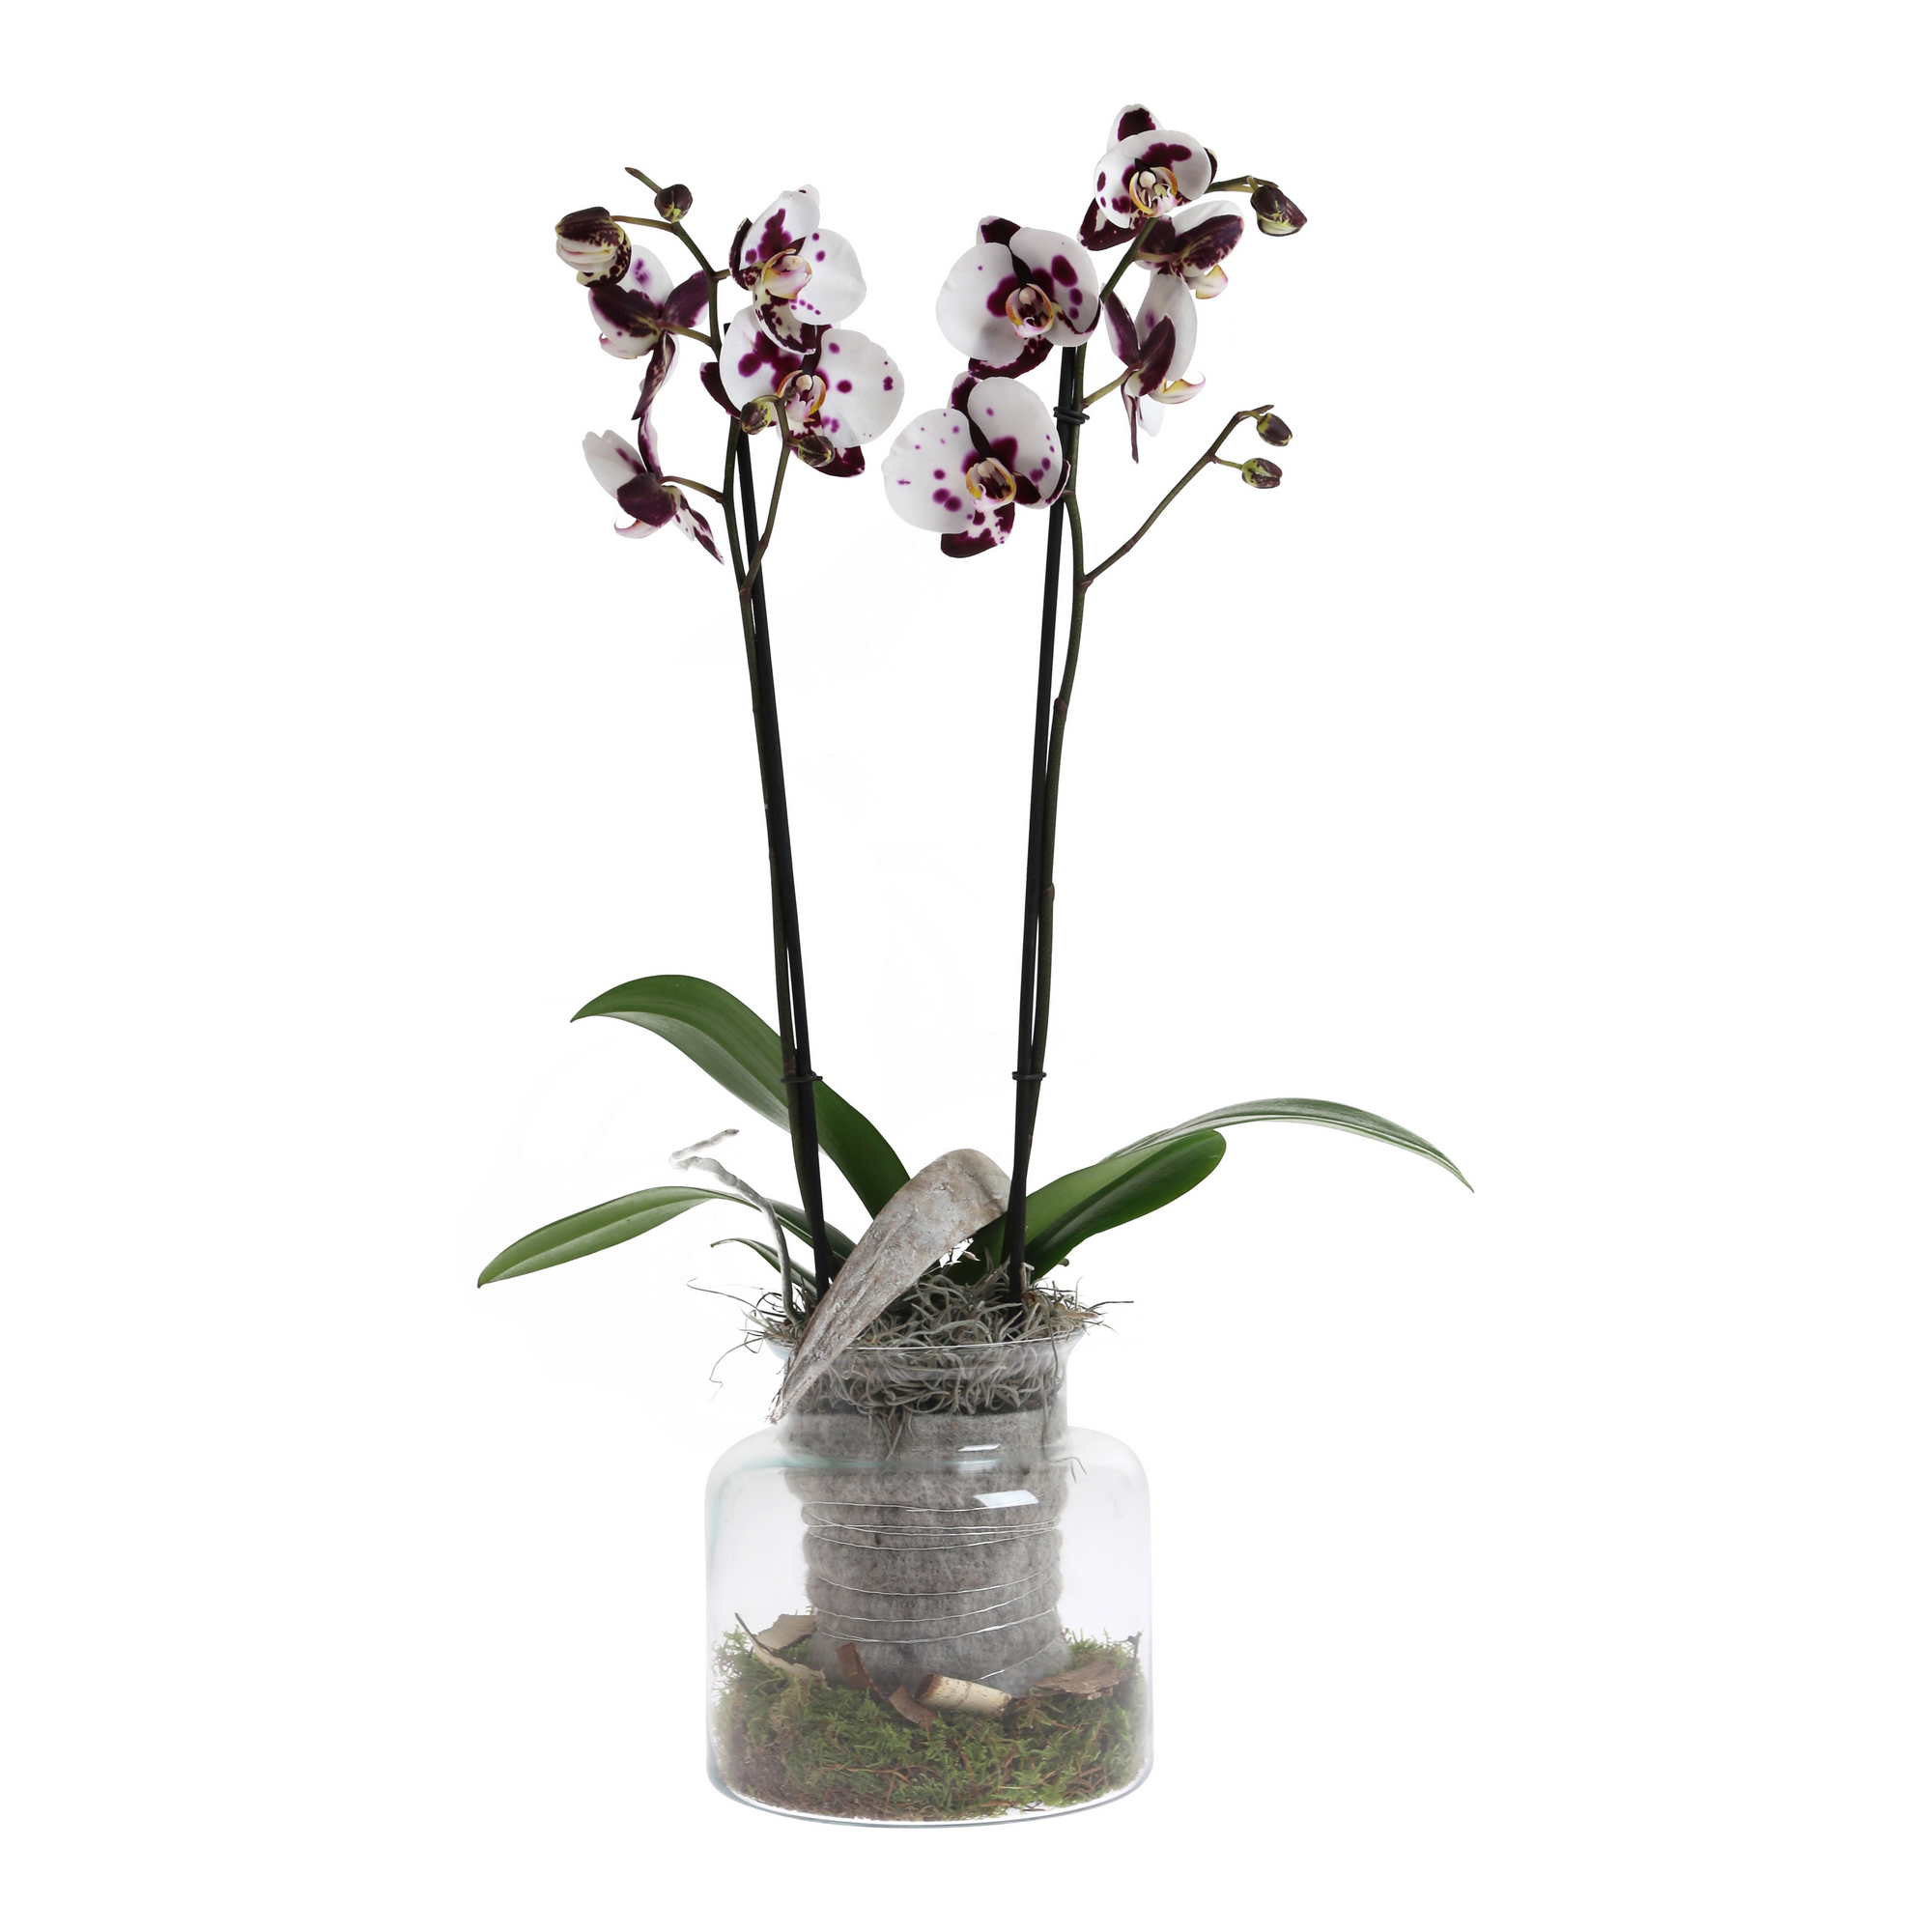 Orchidee im glas mit gelkugeln - Die ausgezeichnetesten Orchidee im glas mit gelkugeln ausführlich verglichen!